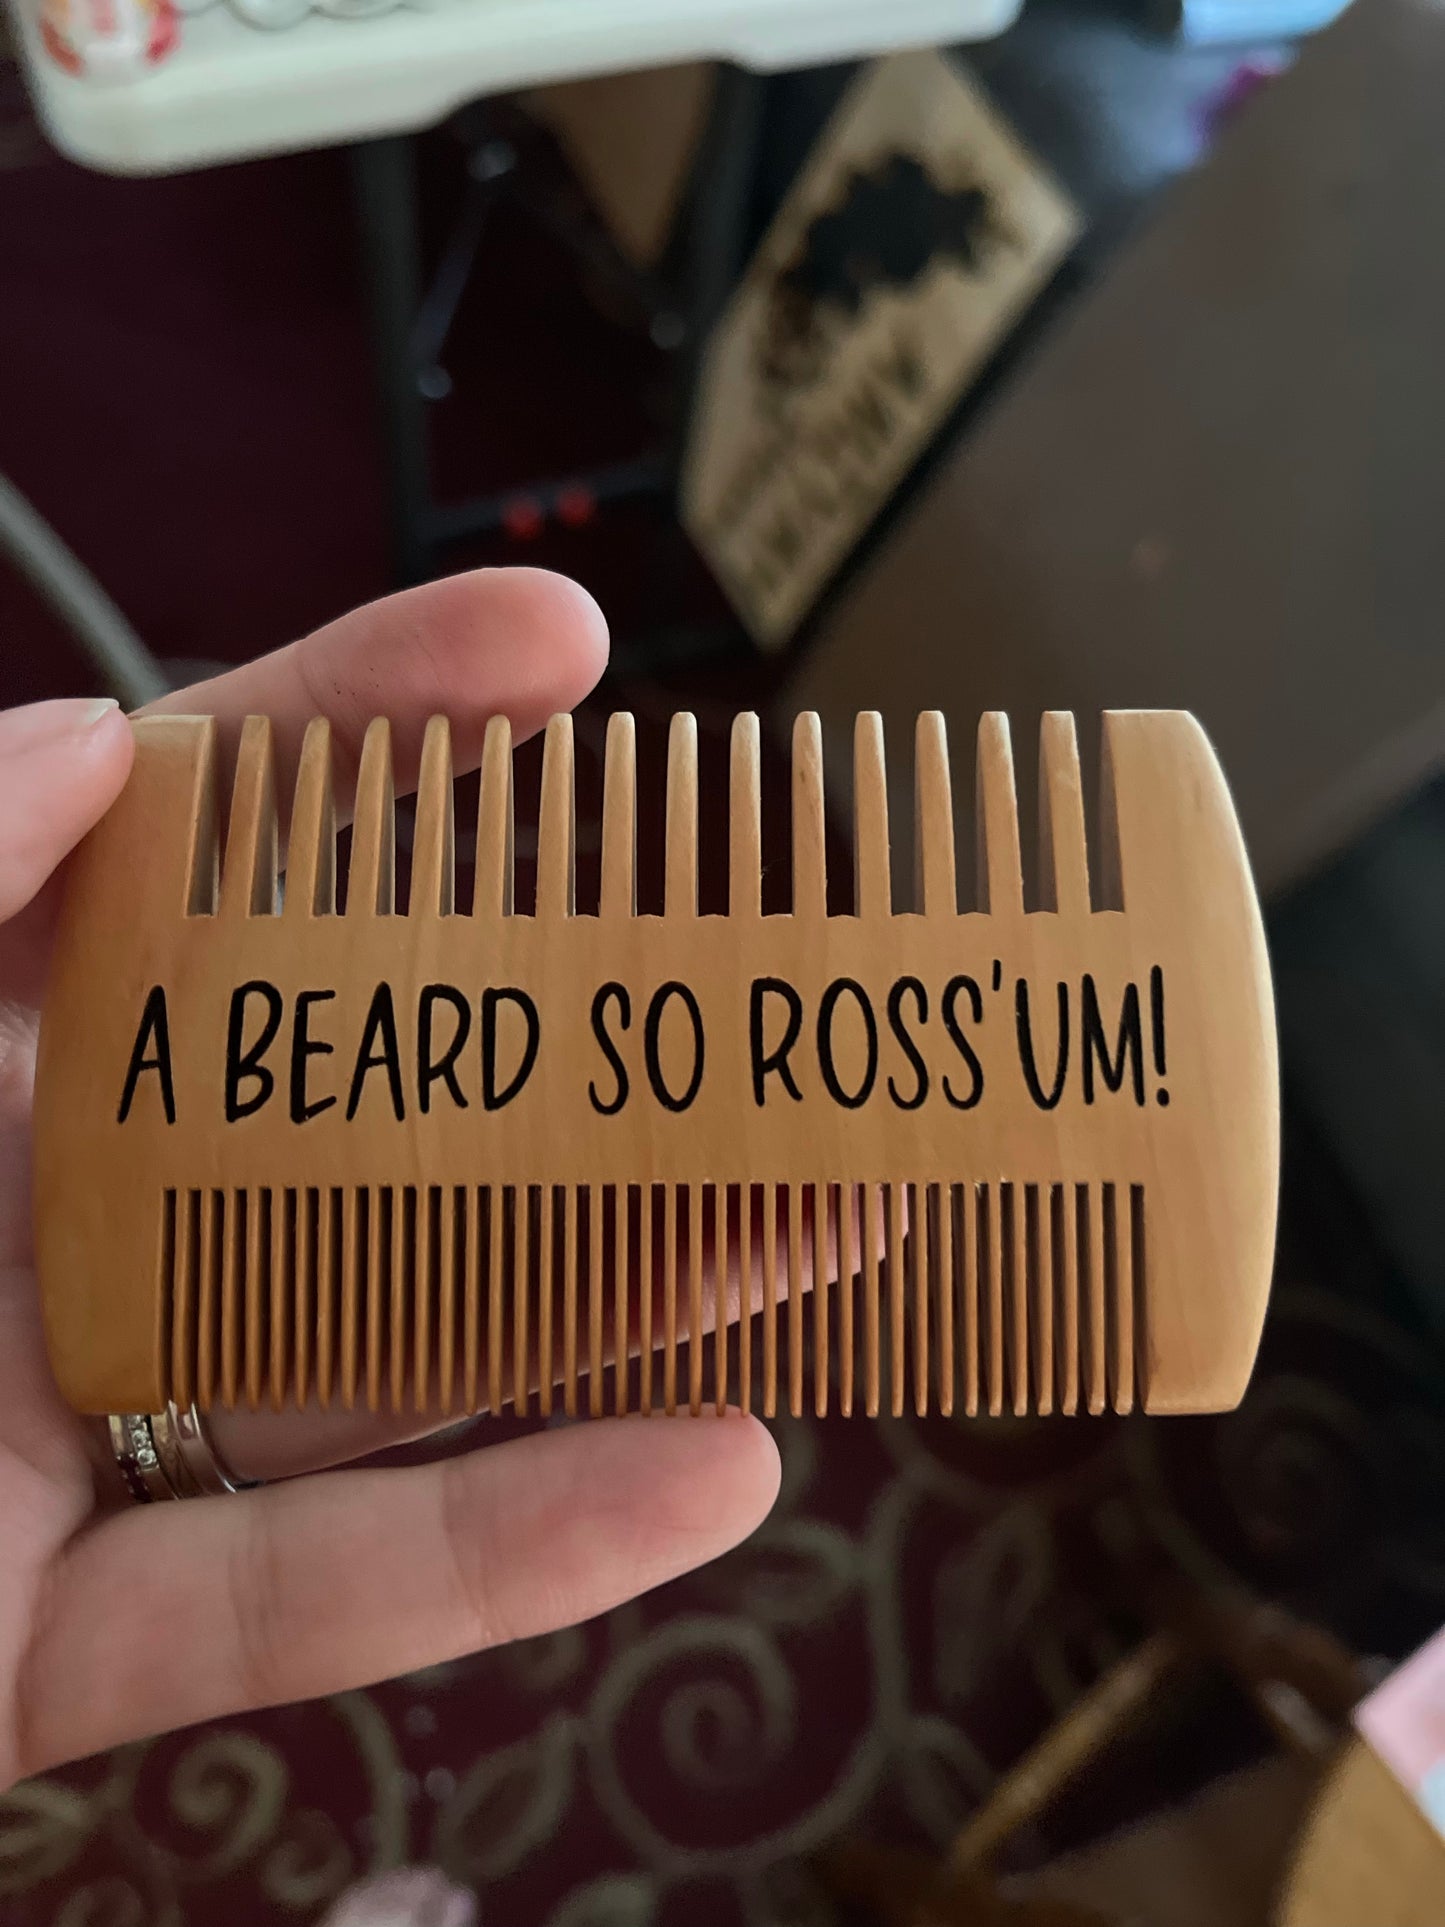 Beard Combs